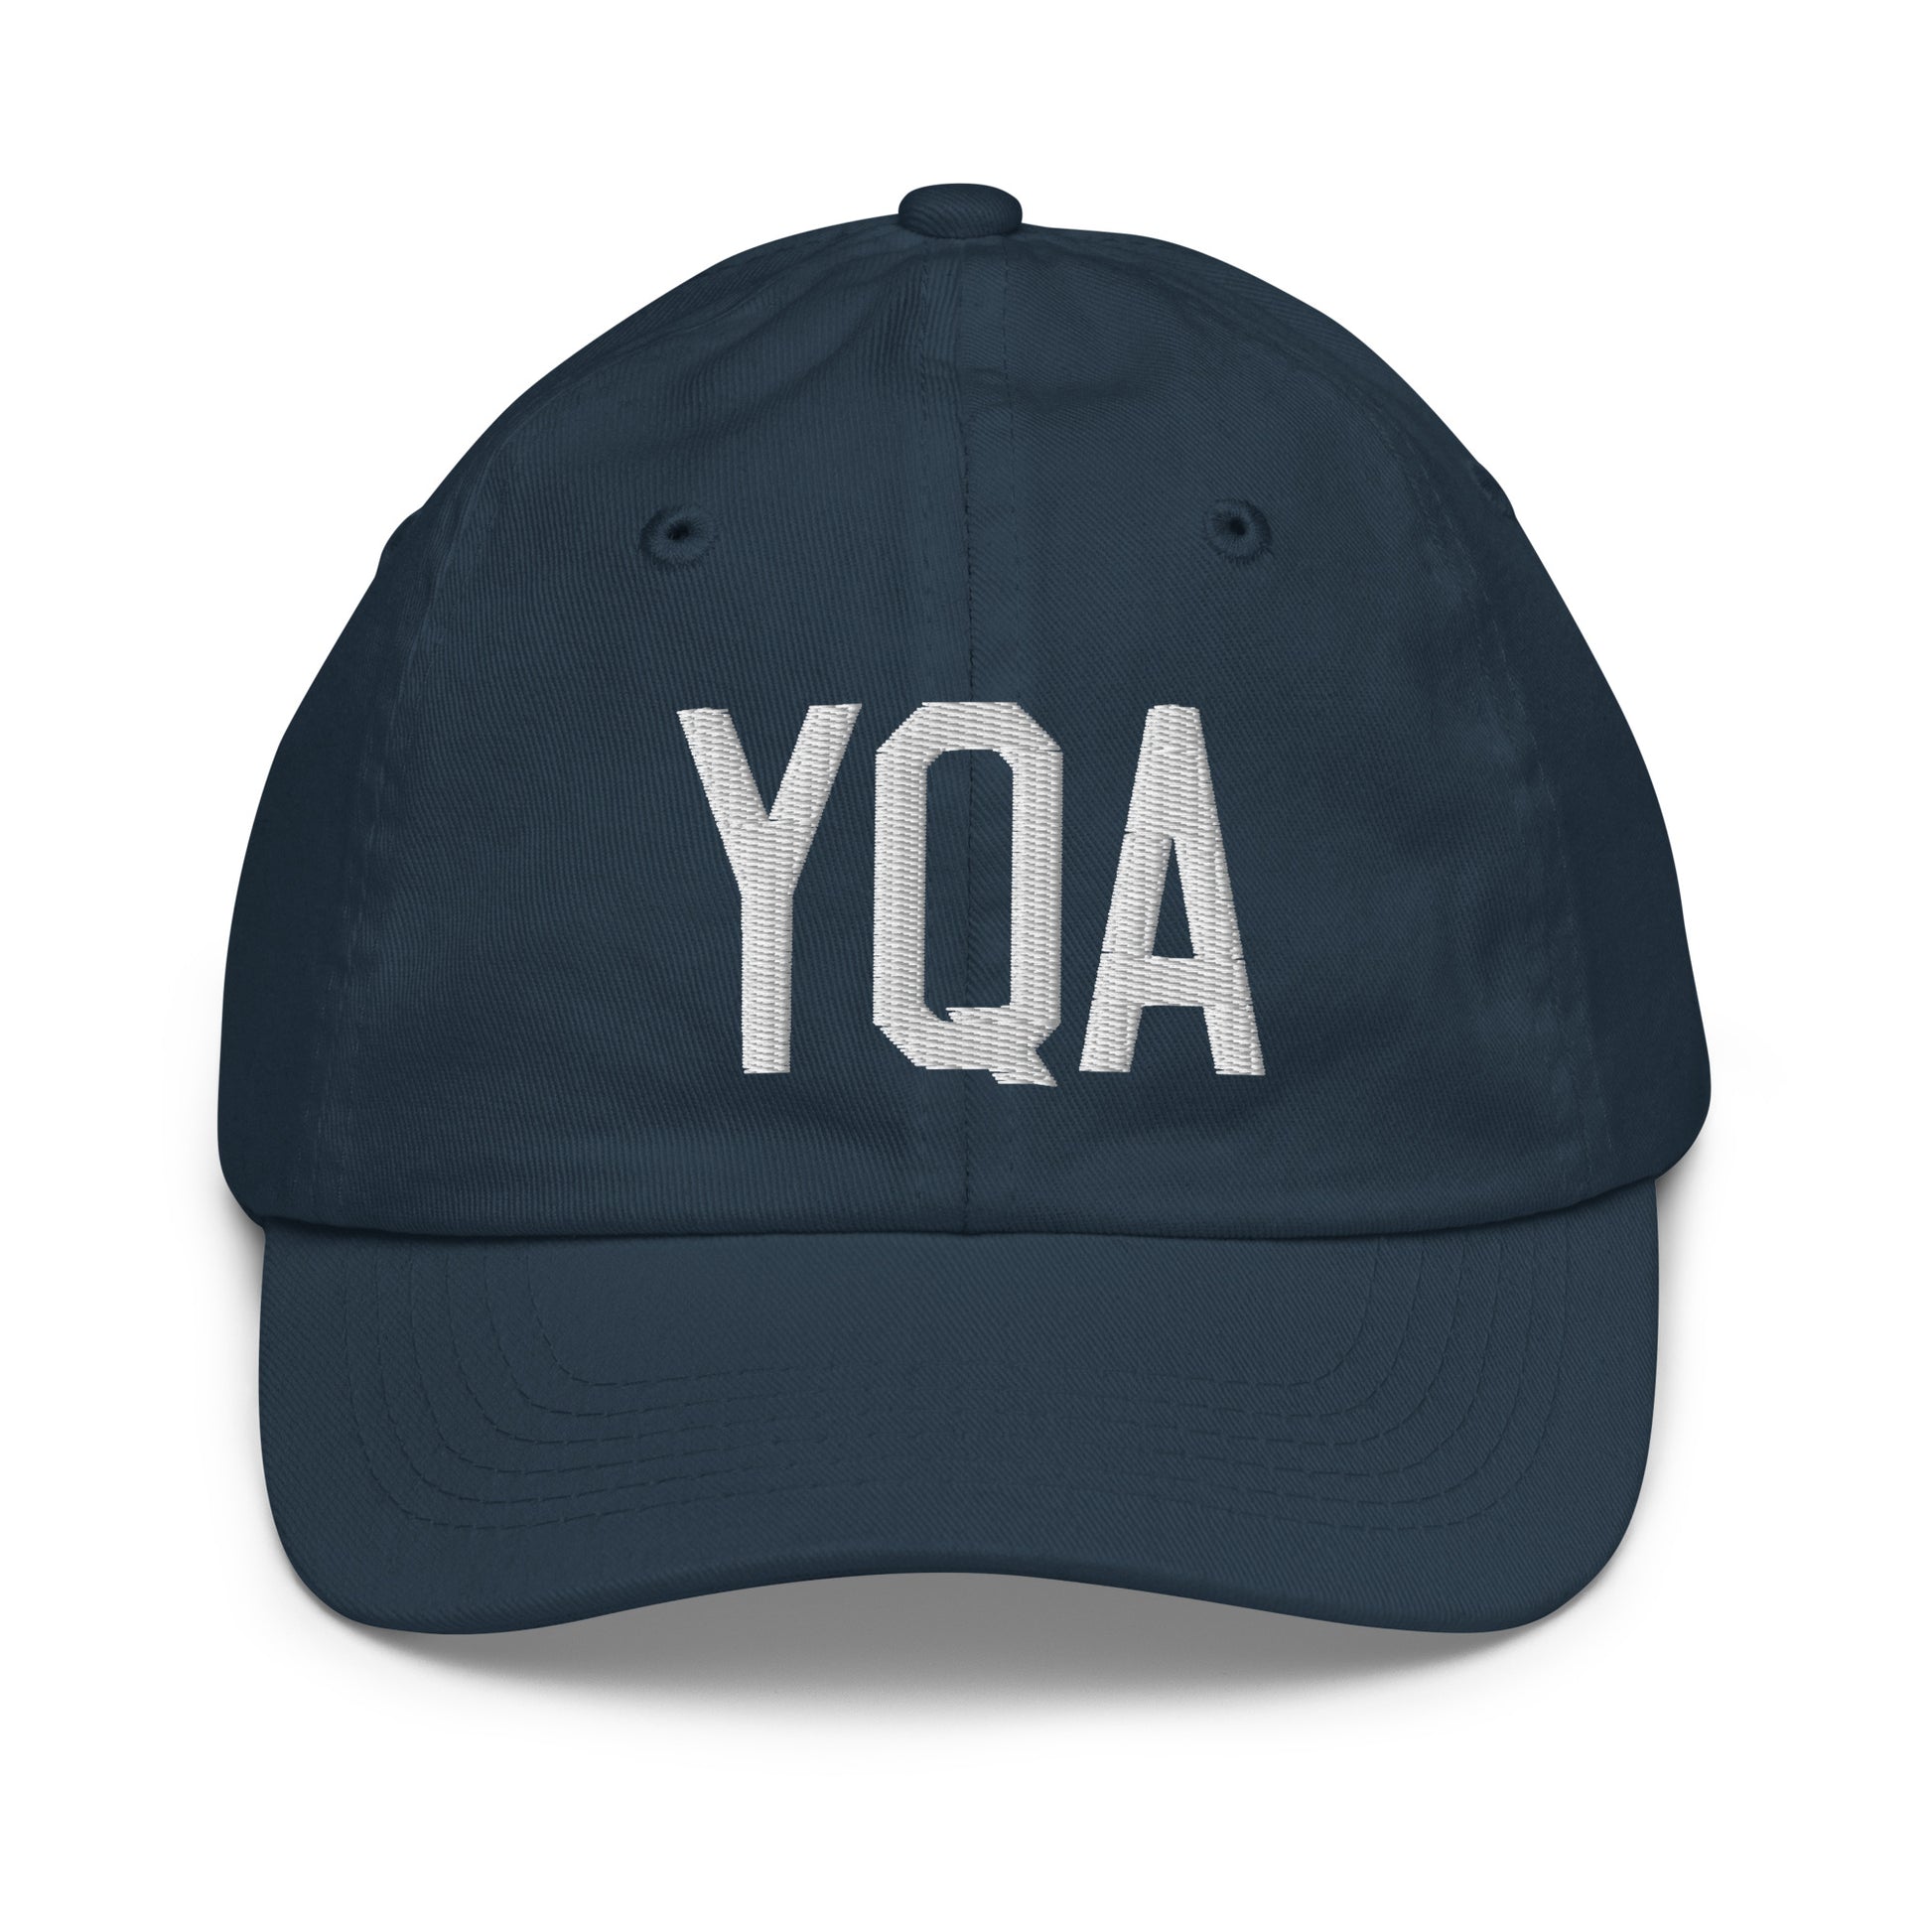 Airport Code Kid's Baseball Cap - White • YQA Muskoka • YHM Designs - Image 14